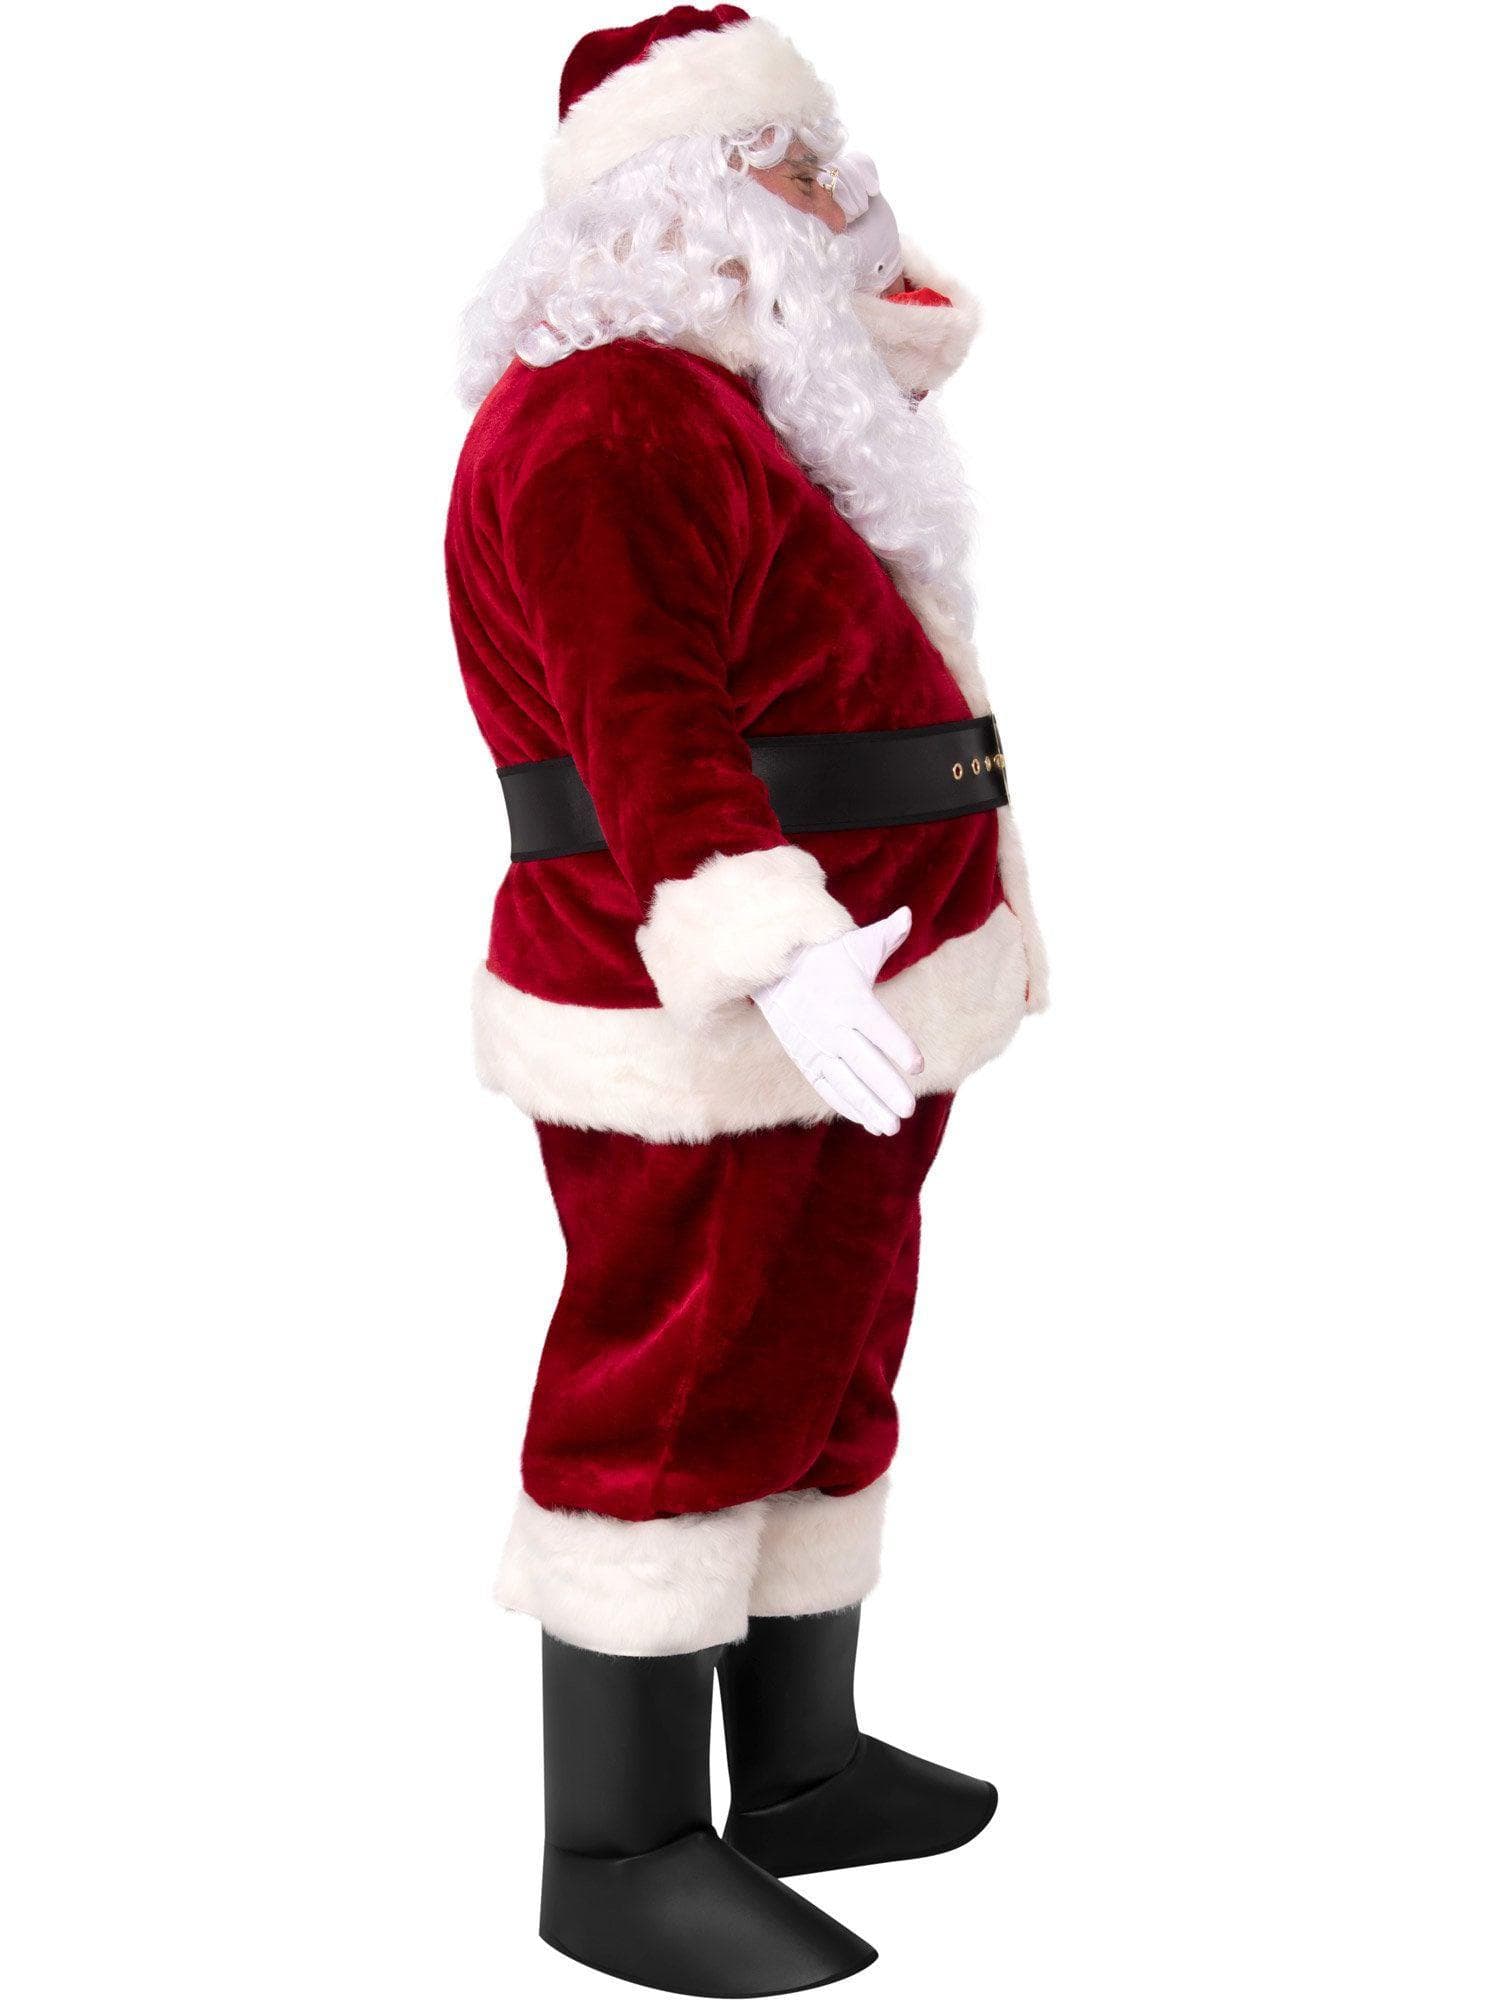 Adult Crimson Imperial X Large Plush Santa Suit Costume - costumes.com